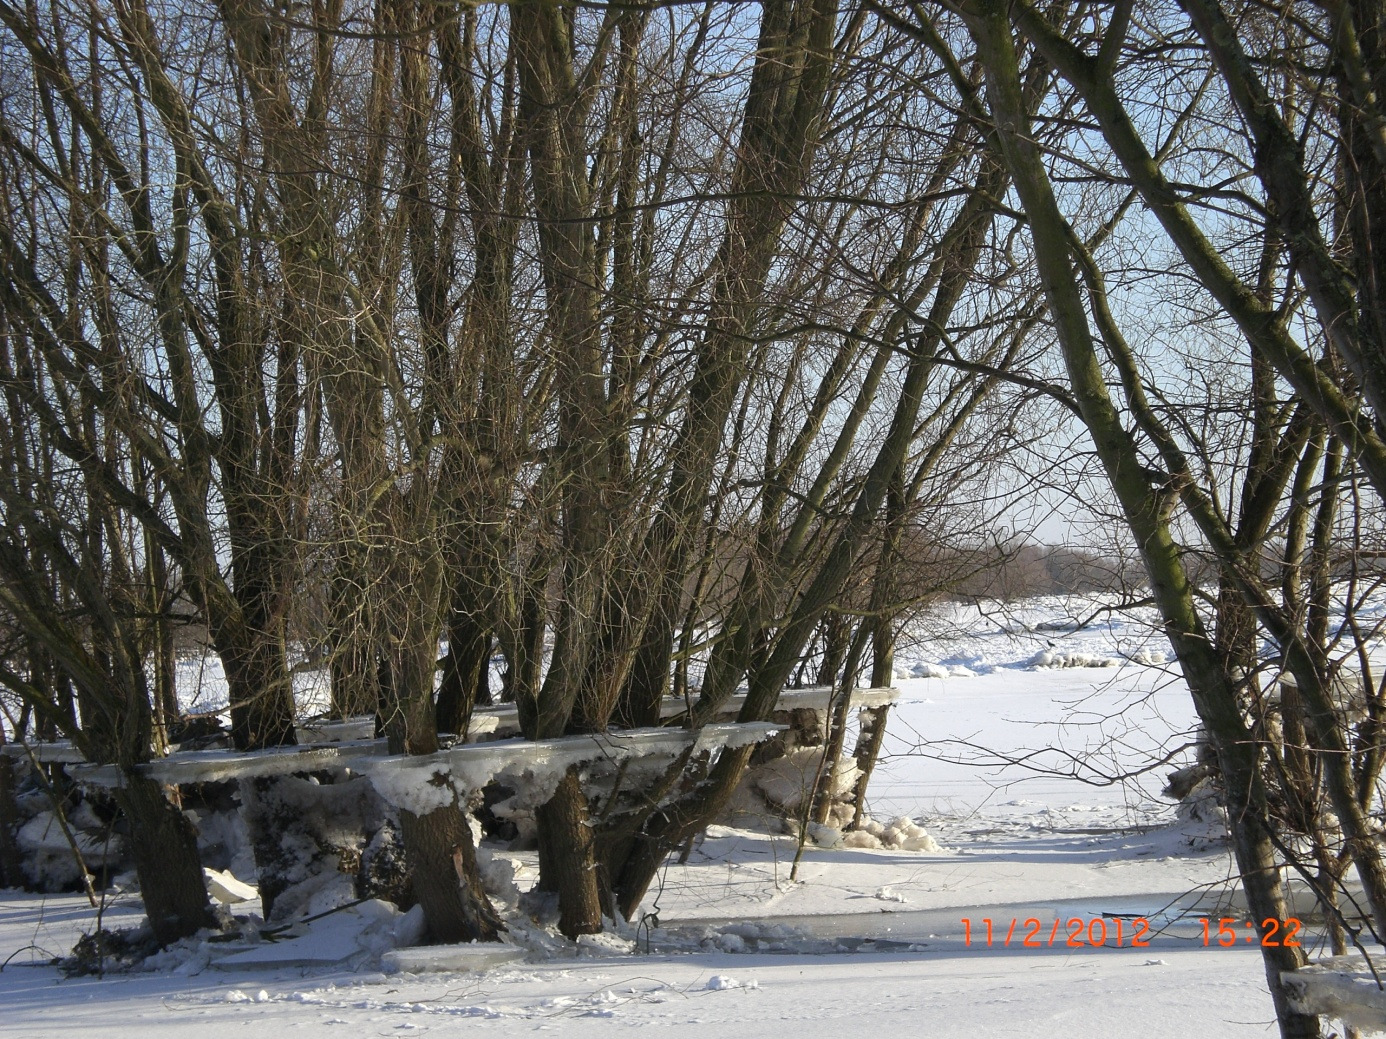 Staatliches Amt für Landwirtschaft und Umwelt Westmecklenburg Hydrologische Kurzdokumentation Elbe-Eisstand Februar 2012 Rückgang des Elbwasserstandes während der Frostperiode (Foto: Kruse privat)